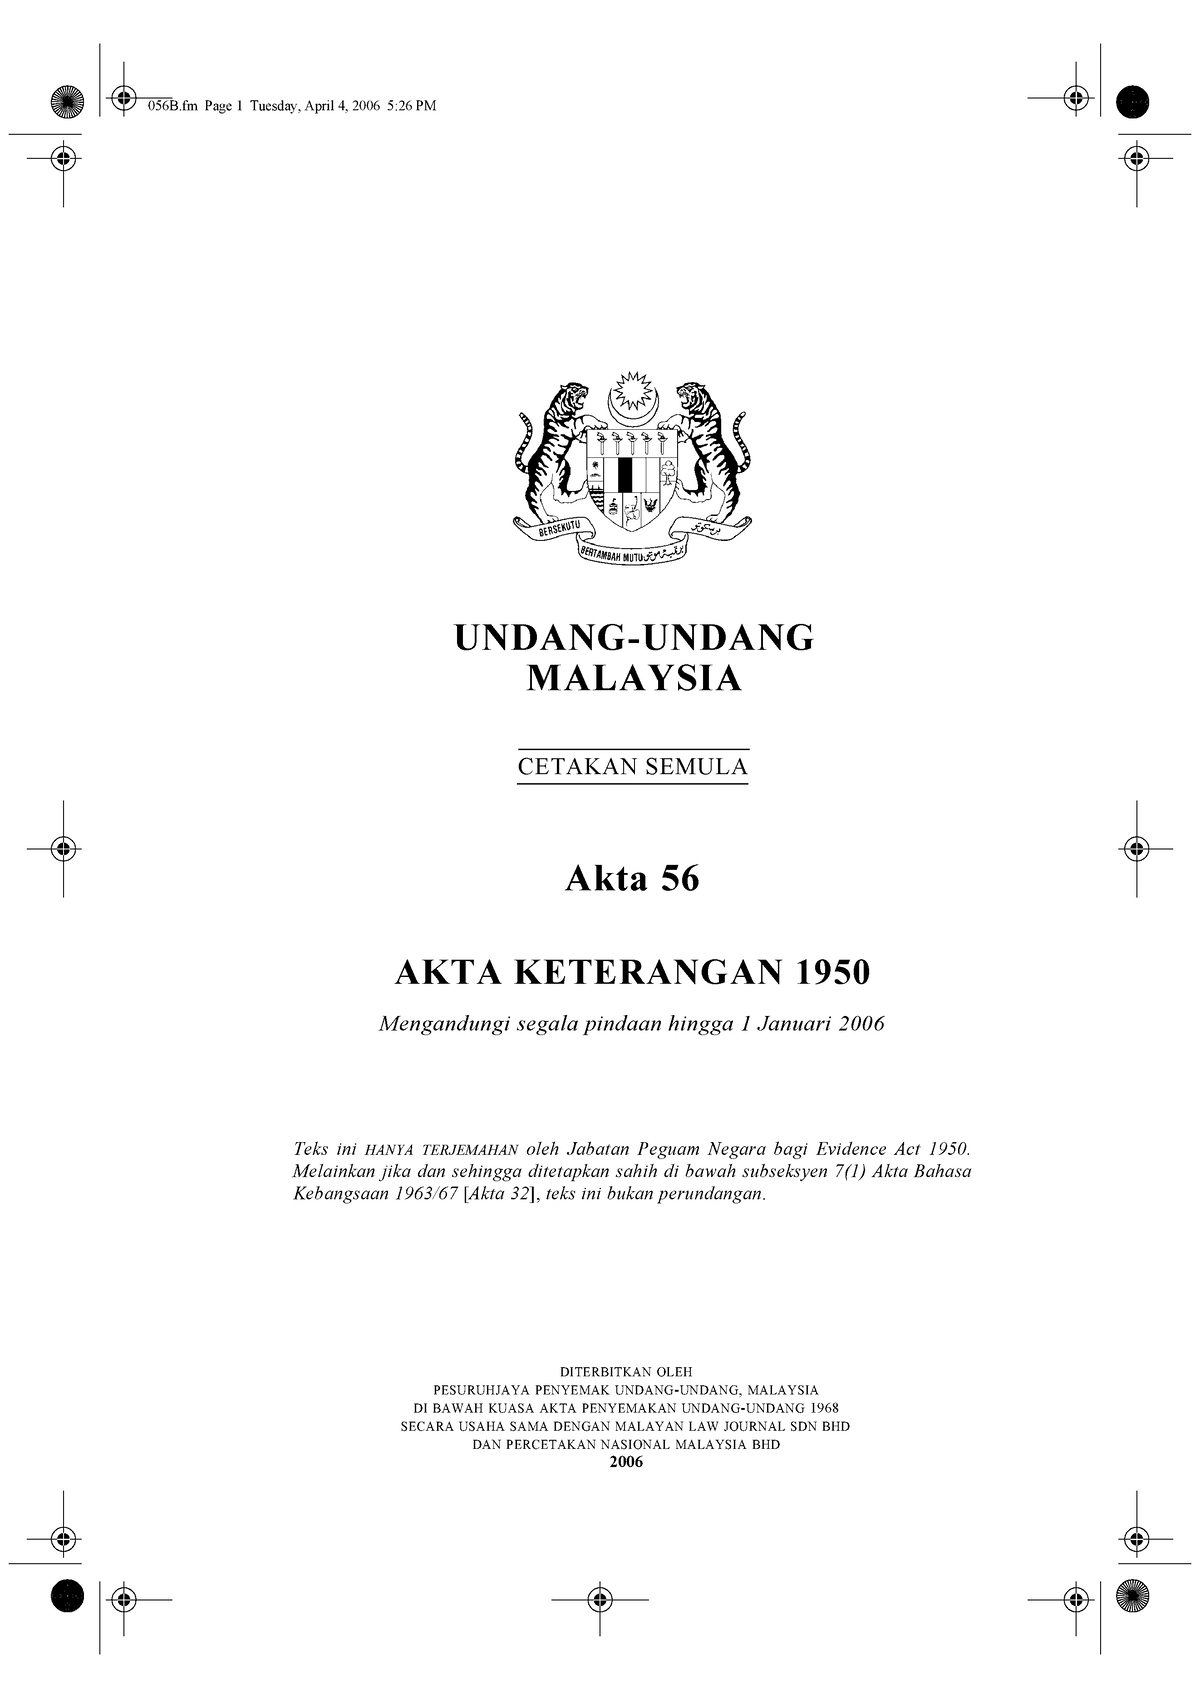 Akta Keterangan pdf file  UNDANGUNDANG CETAKAN SEMULA MALAYSIA